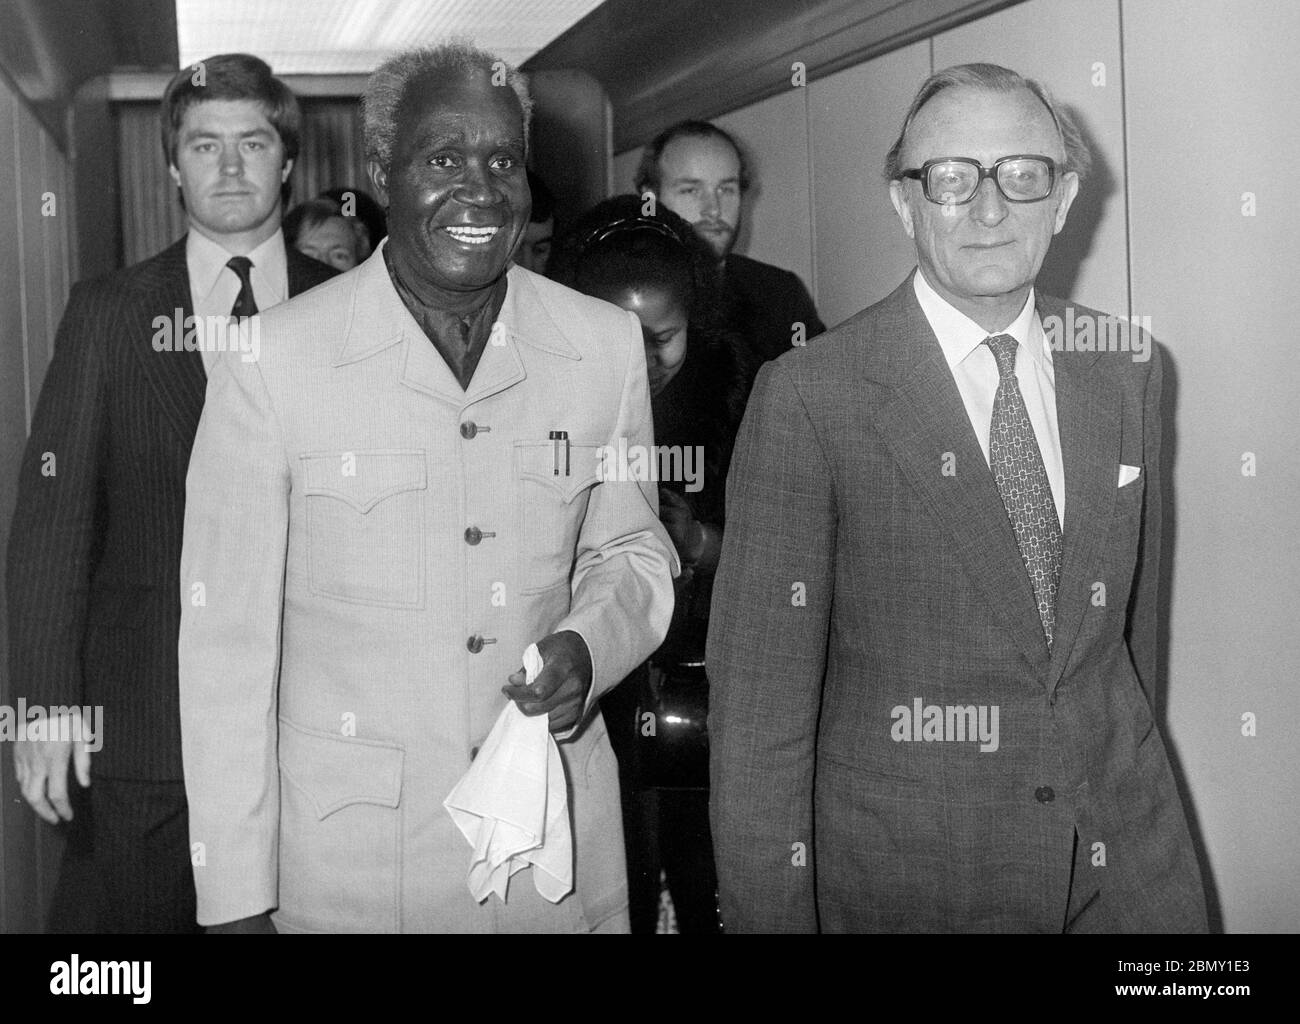 Le président Kaunda de Zambie arrivant à l'aéroport de Londres Heathrow en novembre 1979 a rencontré le secrétaire britannique aux Affaires étrangères Lord Carrington. Banque D'Images